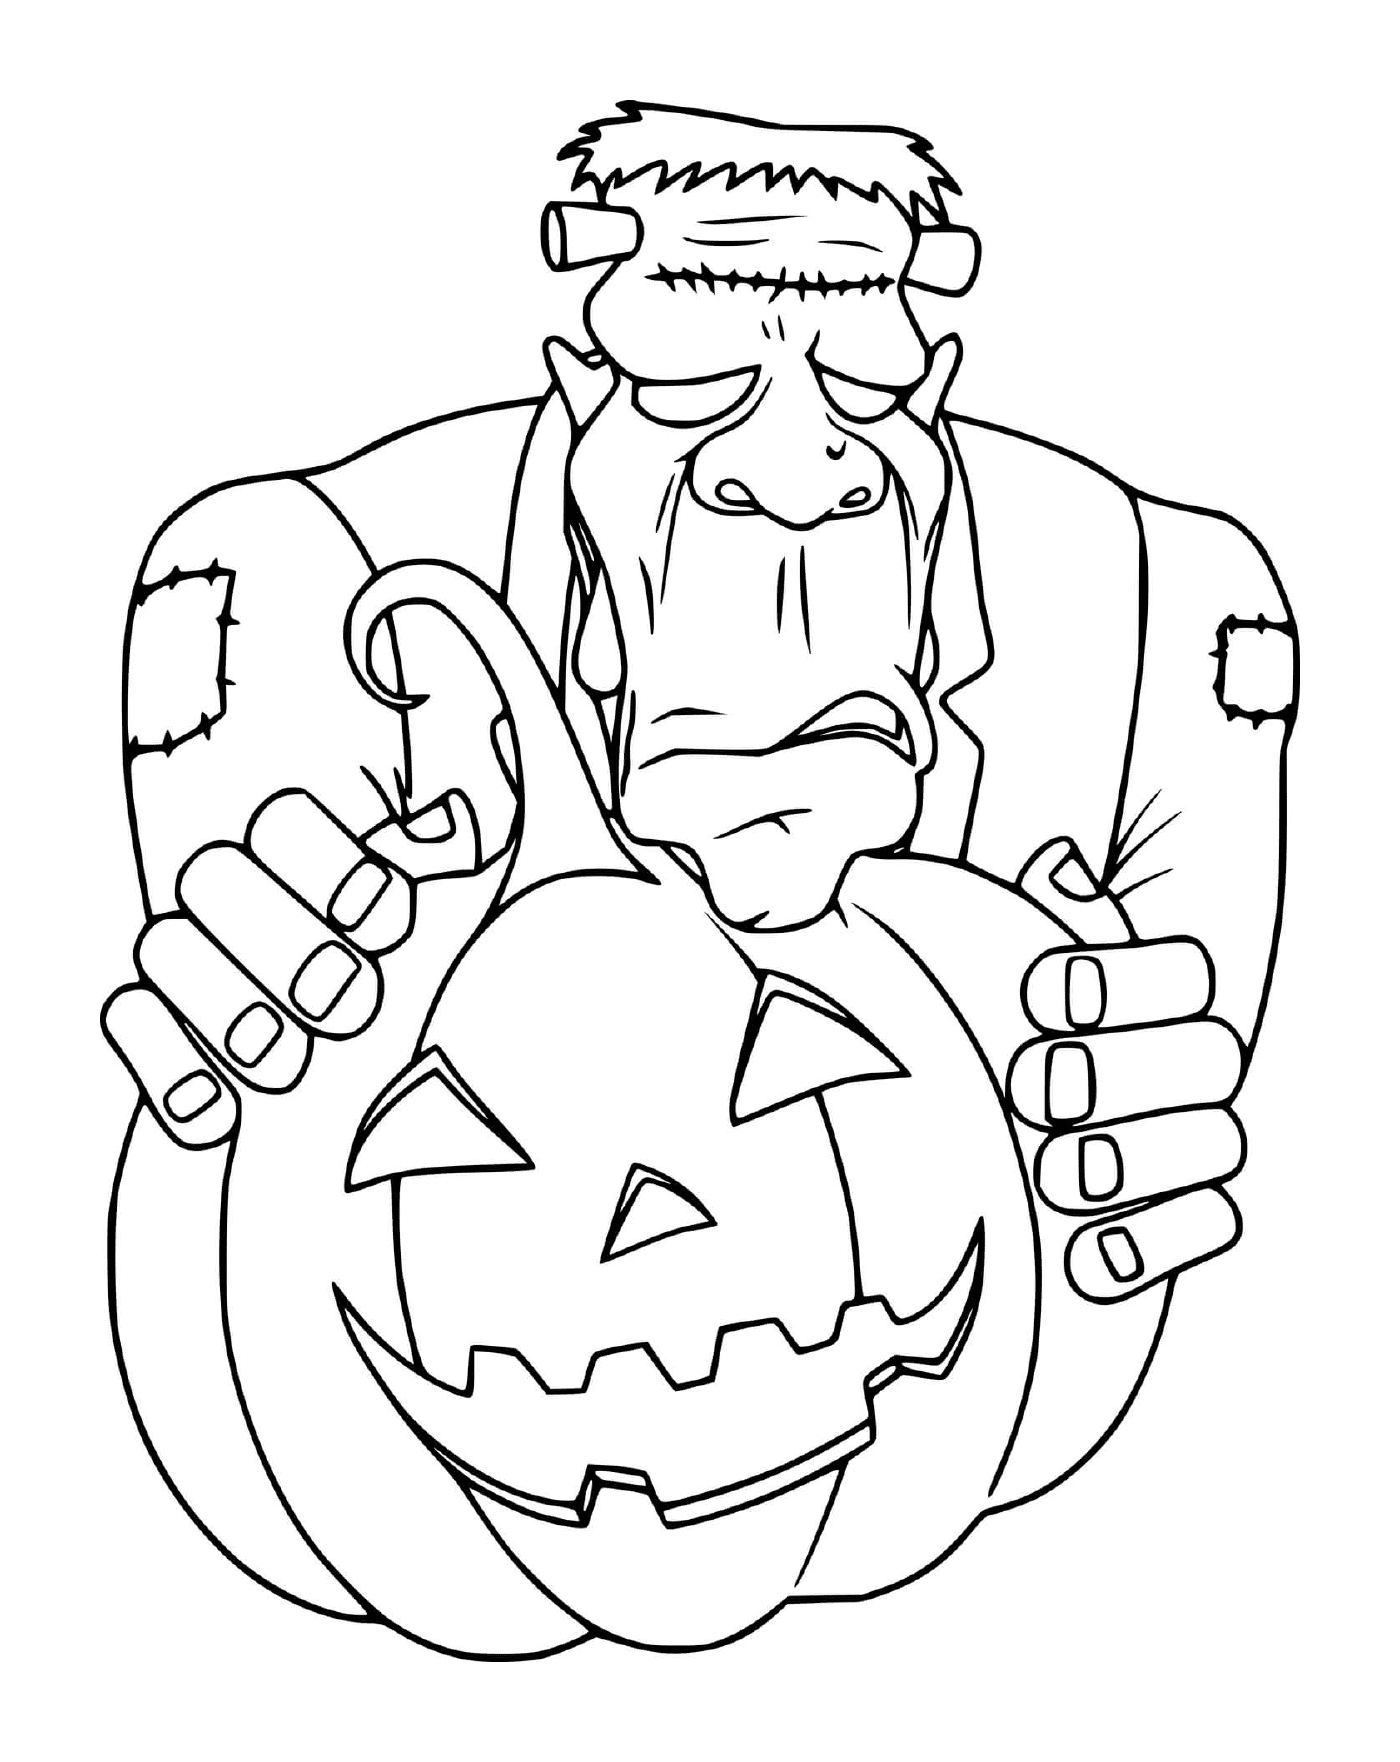  Frankenstein hides behind a pumpkin 